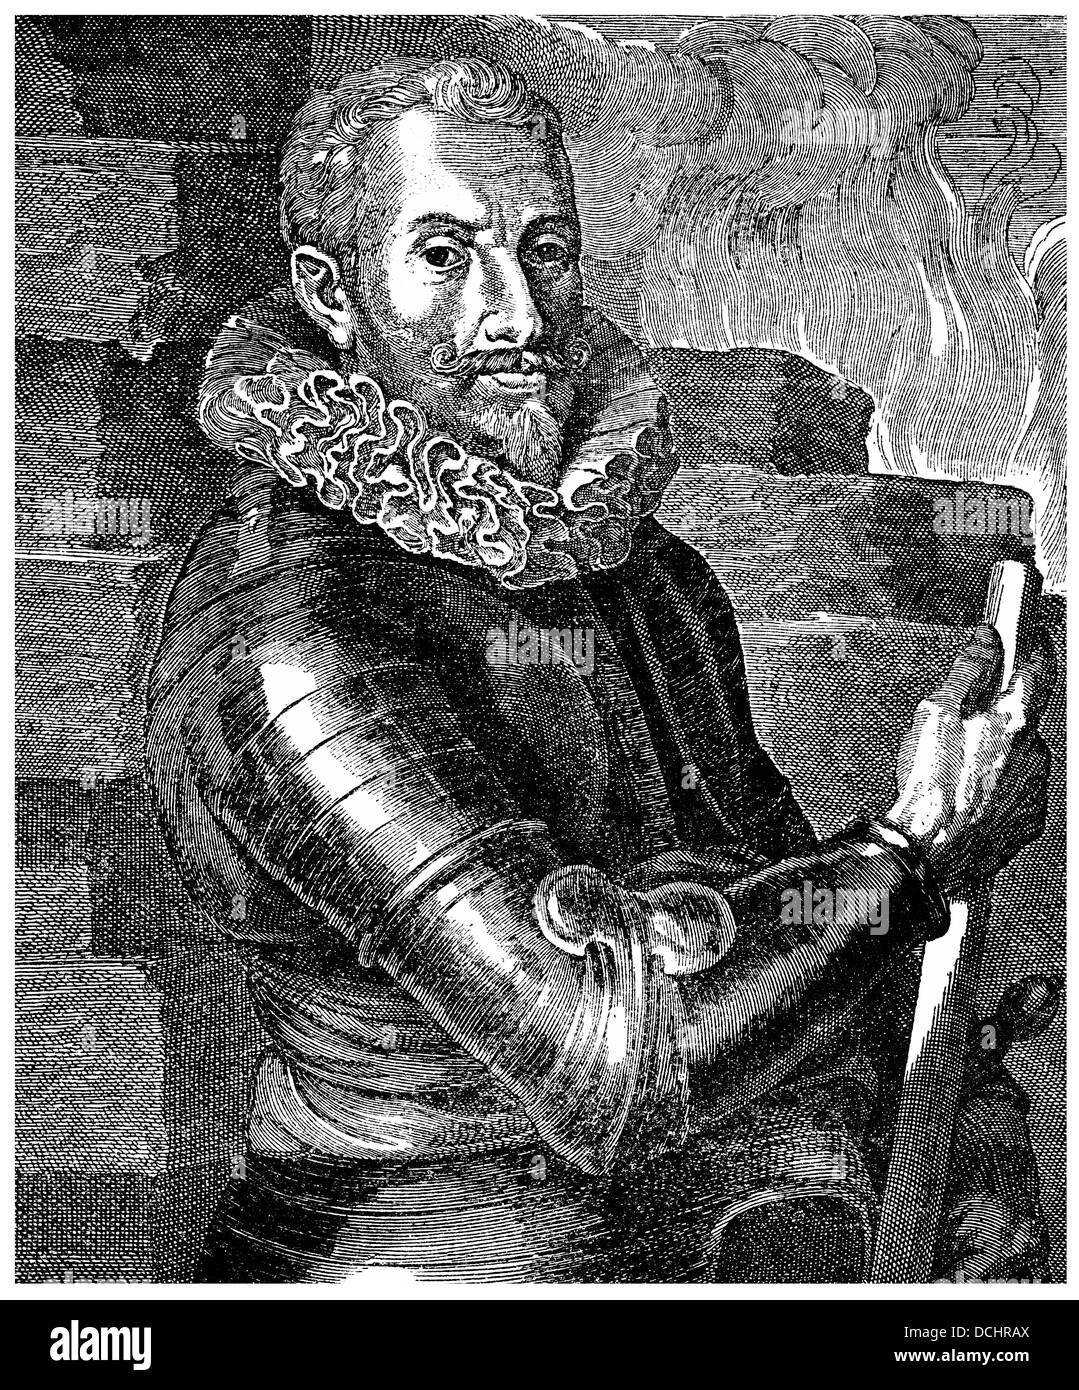 Johann t'Serclaes, Graf von Tilly, 1559-1632, Heerführer der katholischen Liga und Kommandant des Dreißigjährigen Krieges Stockfoto